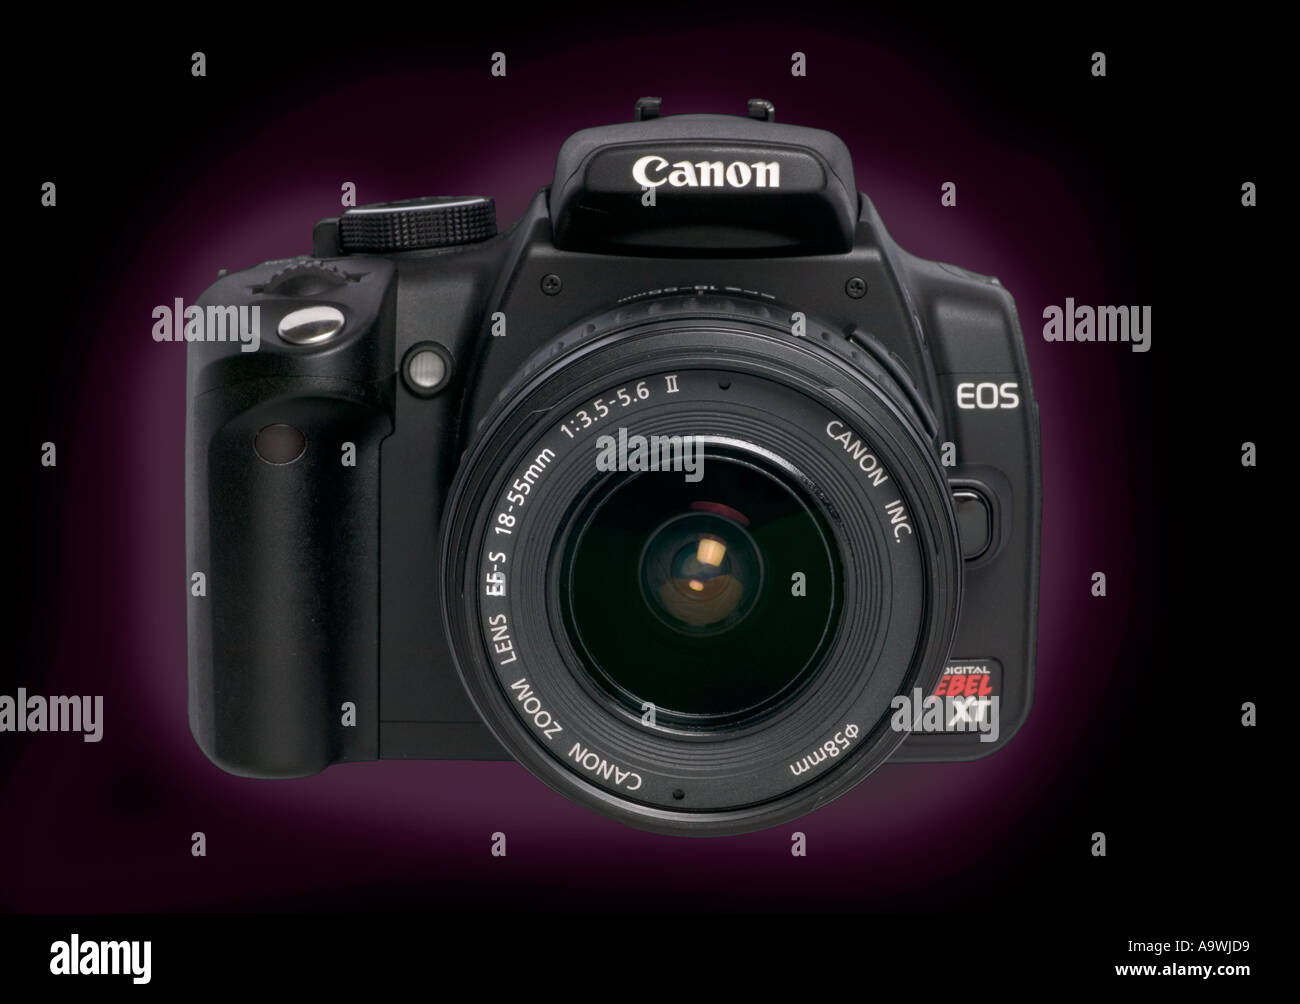 Canon 350d 350XT digital camera 8mp Stock Photo